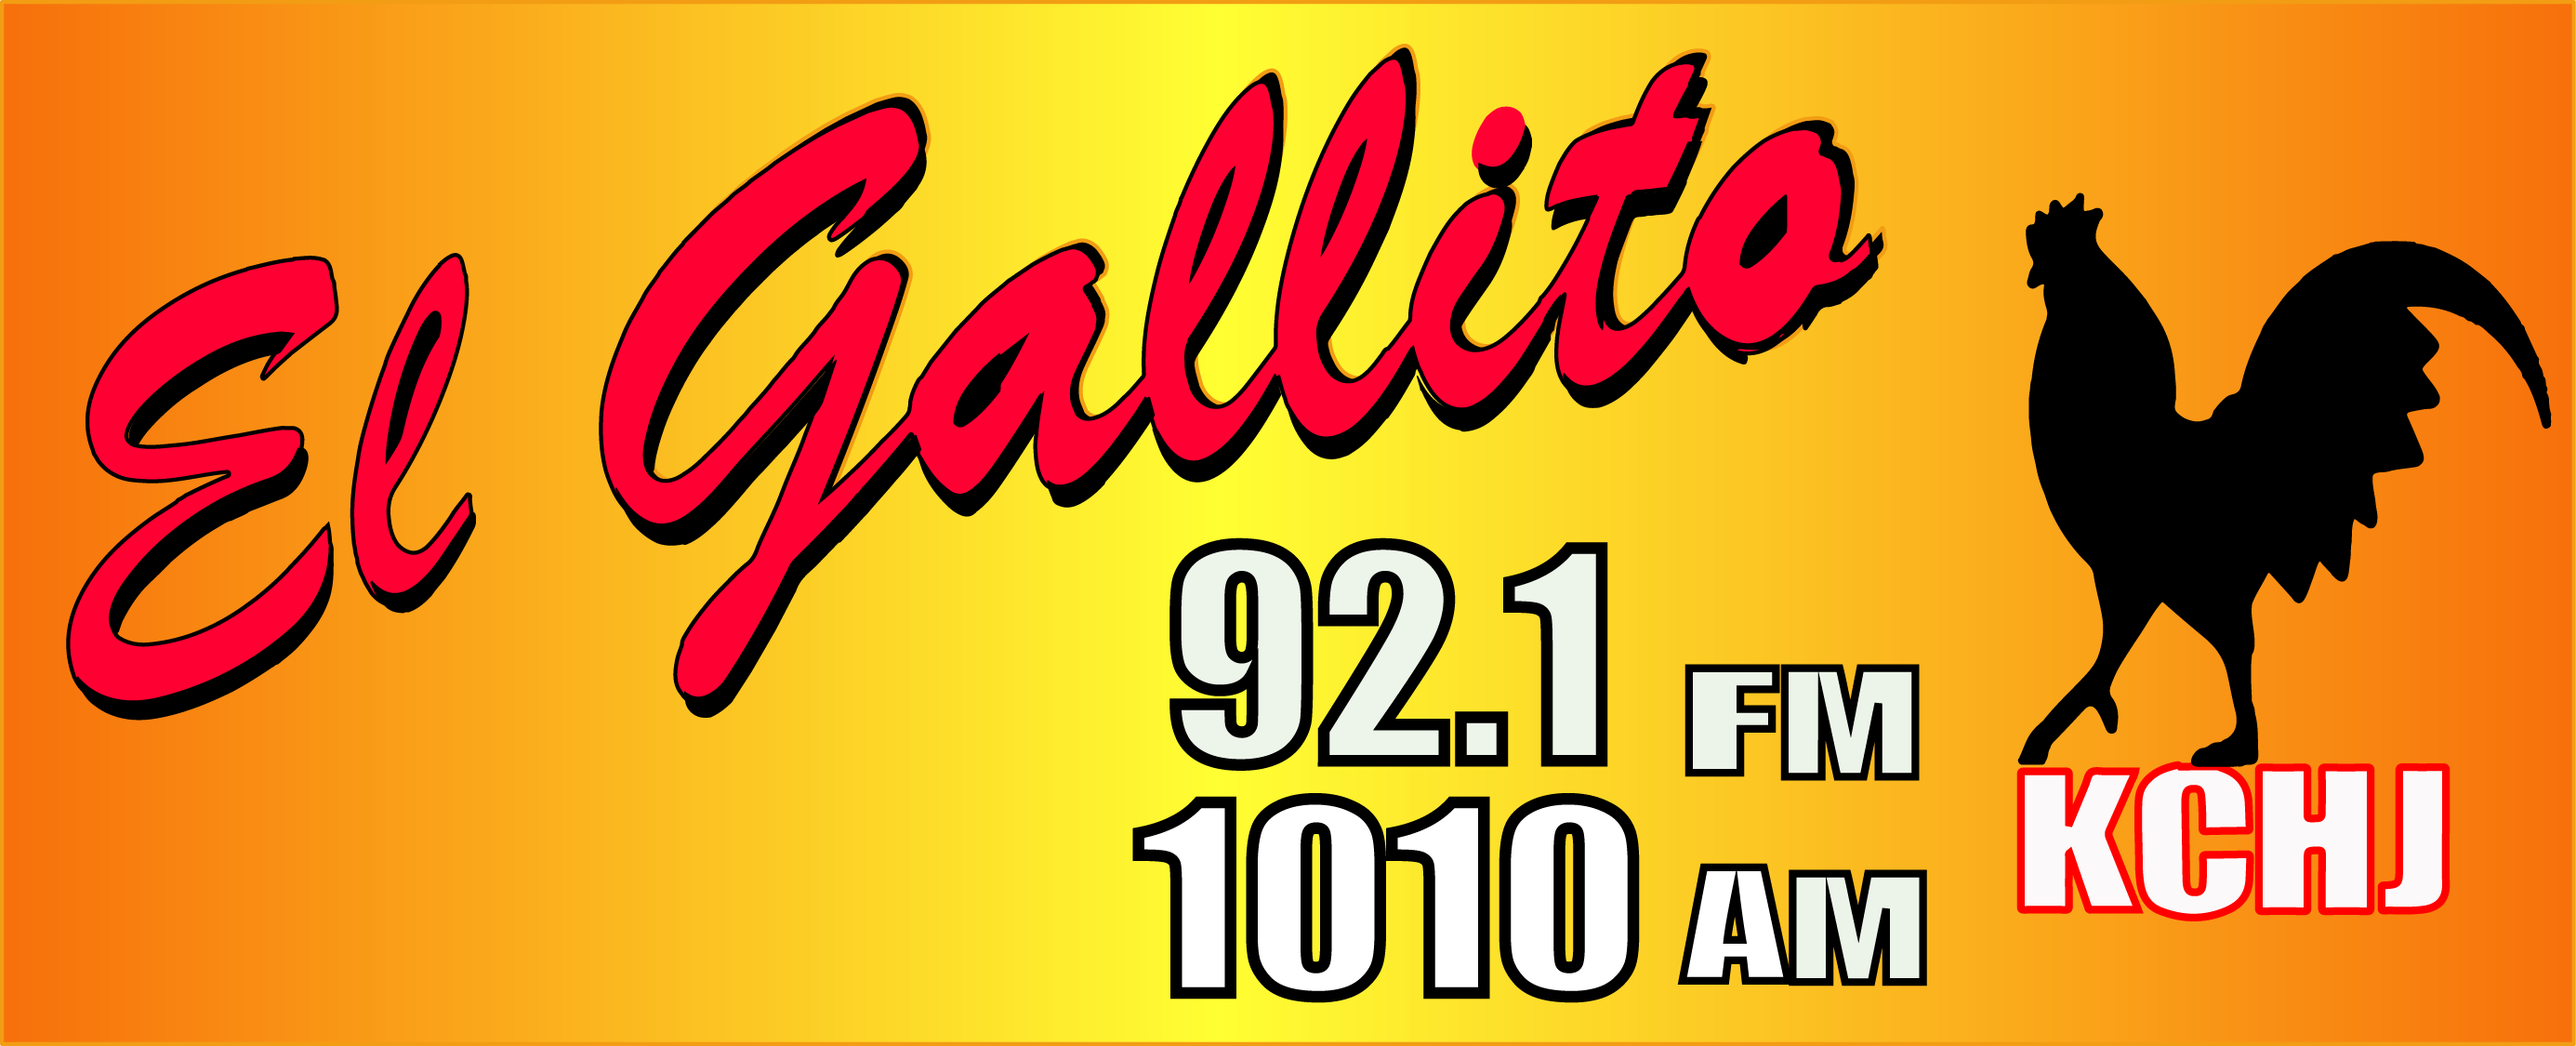 El Gallito 1010 AM Y 92.1 FM